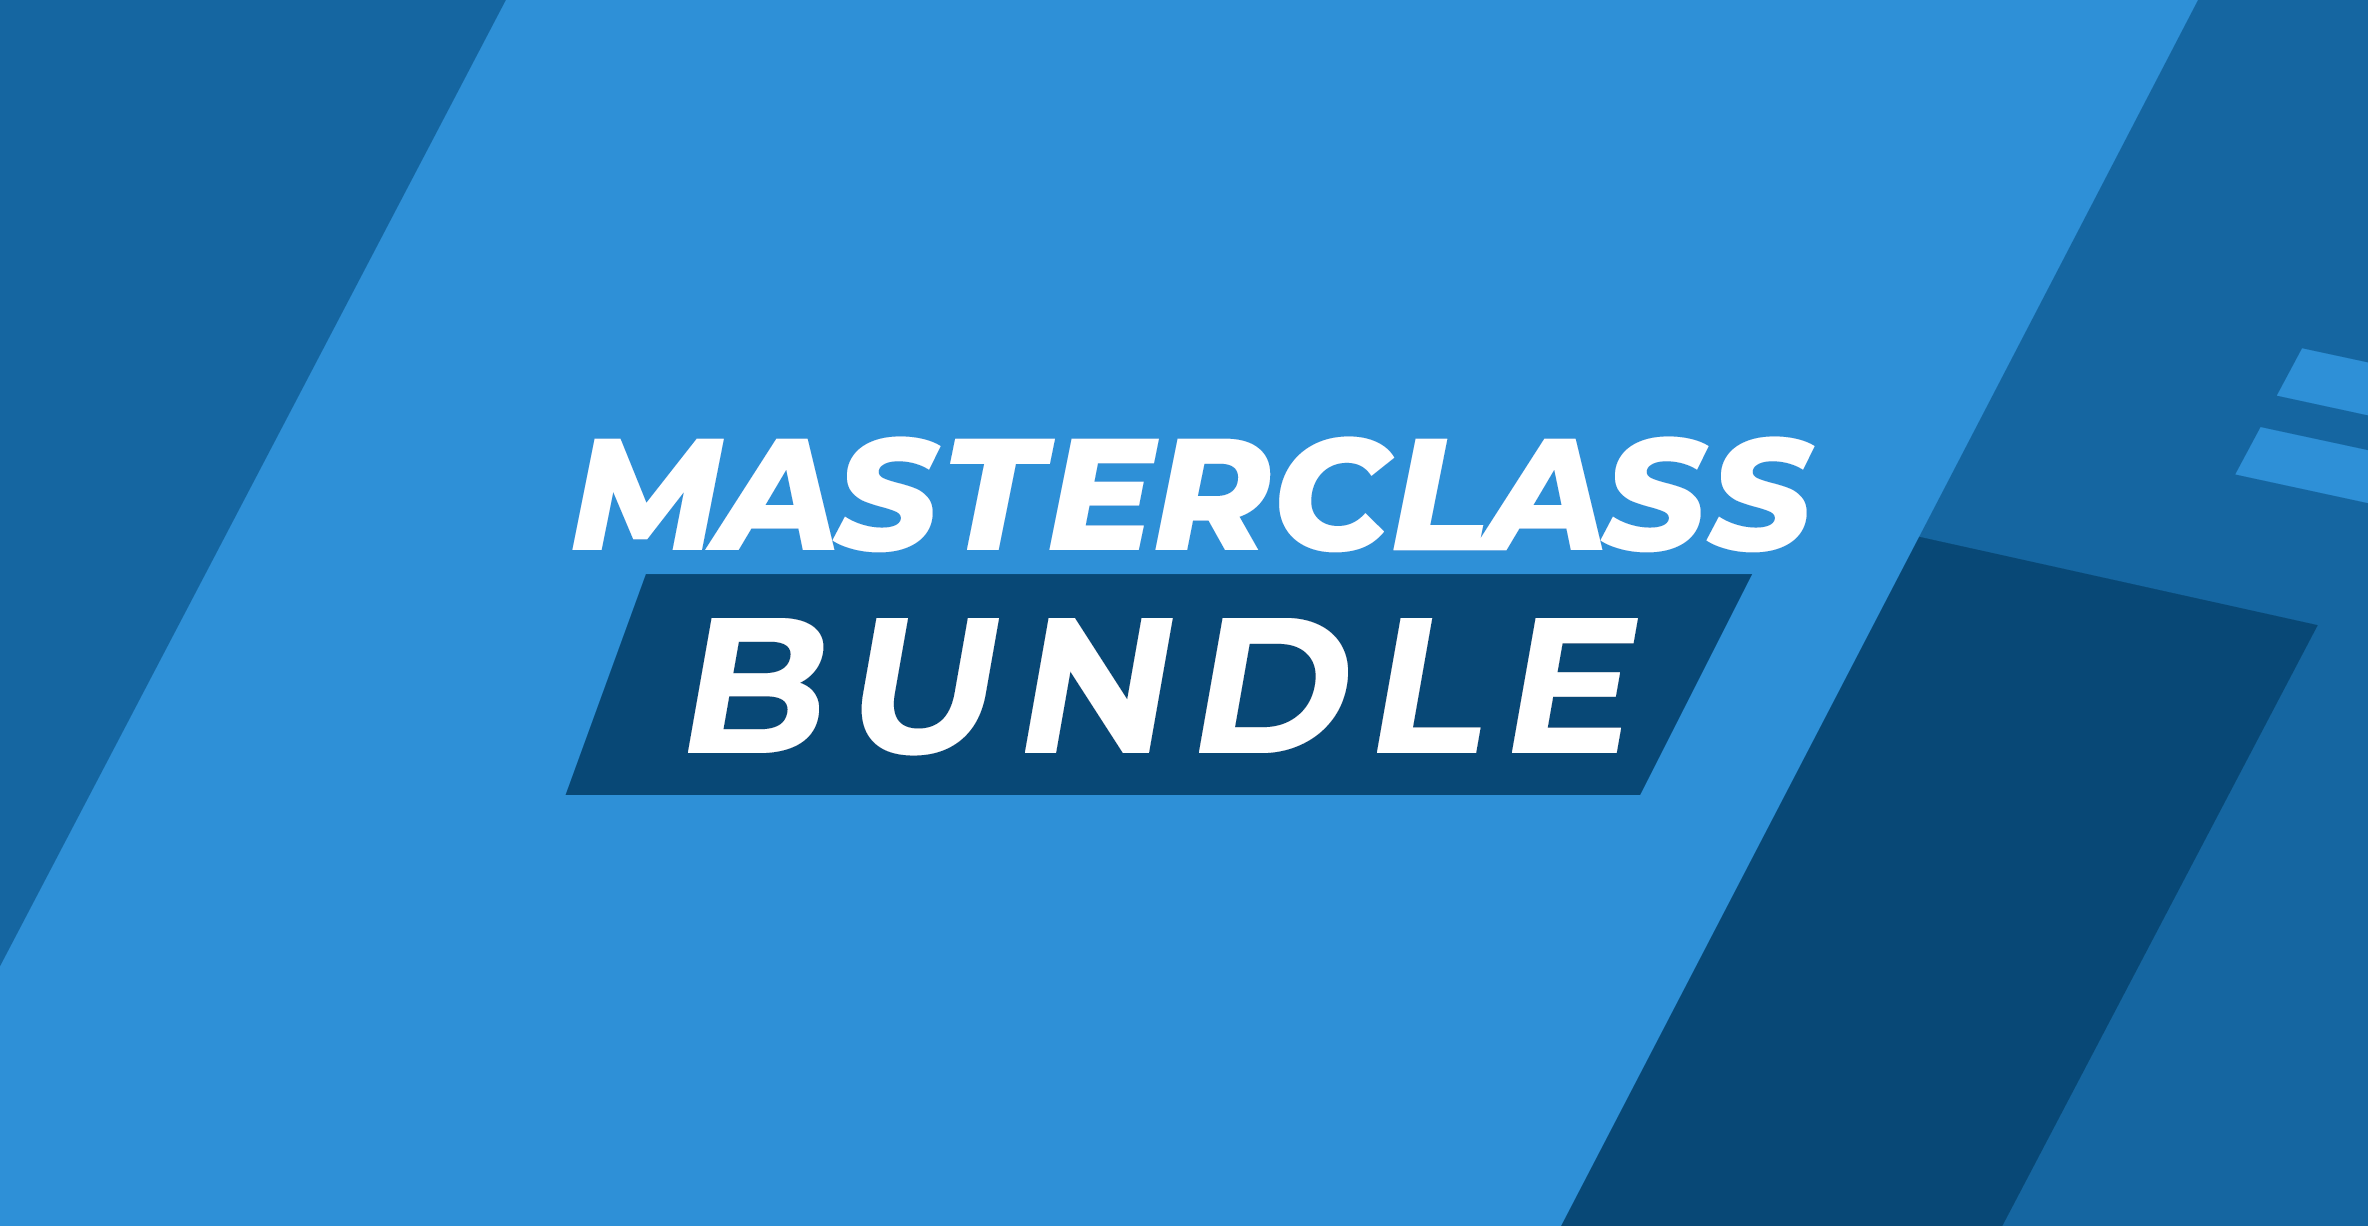 Masterclass Bundle 2